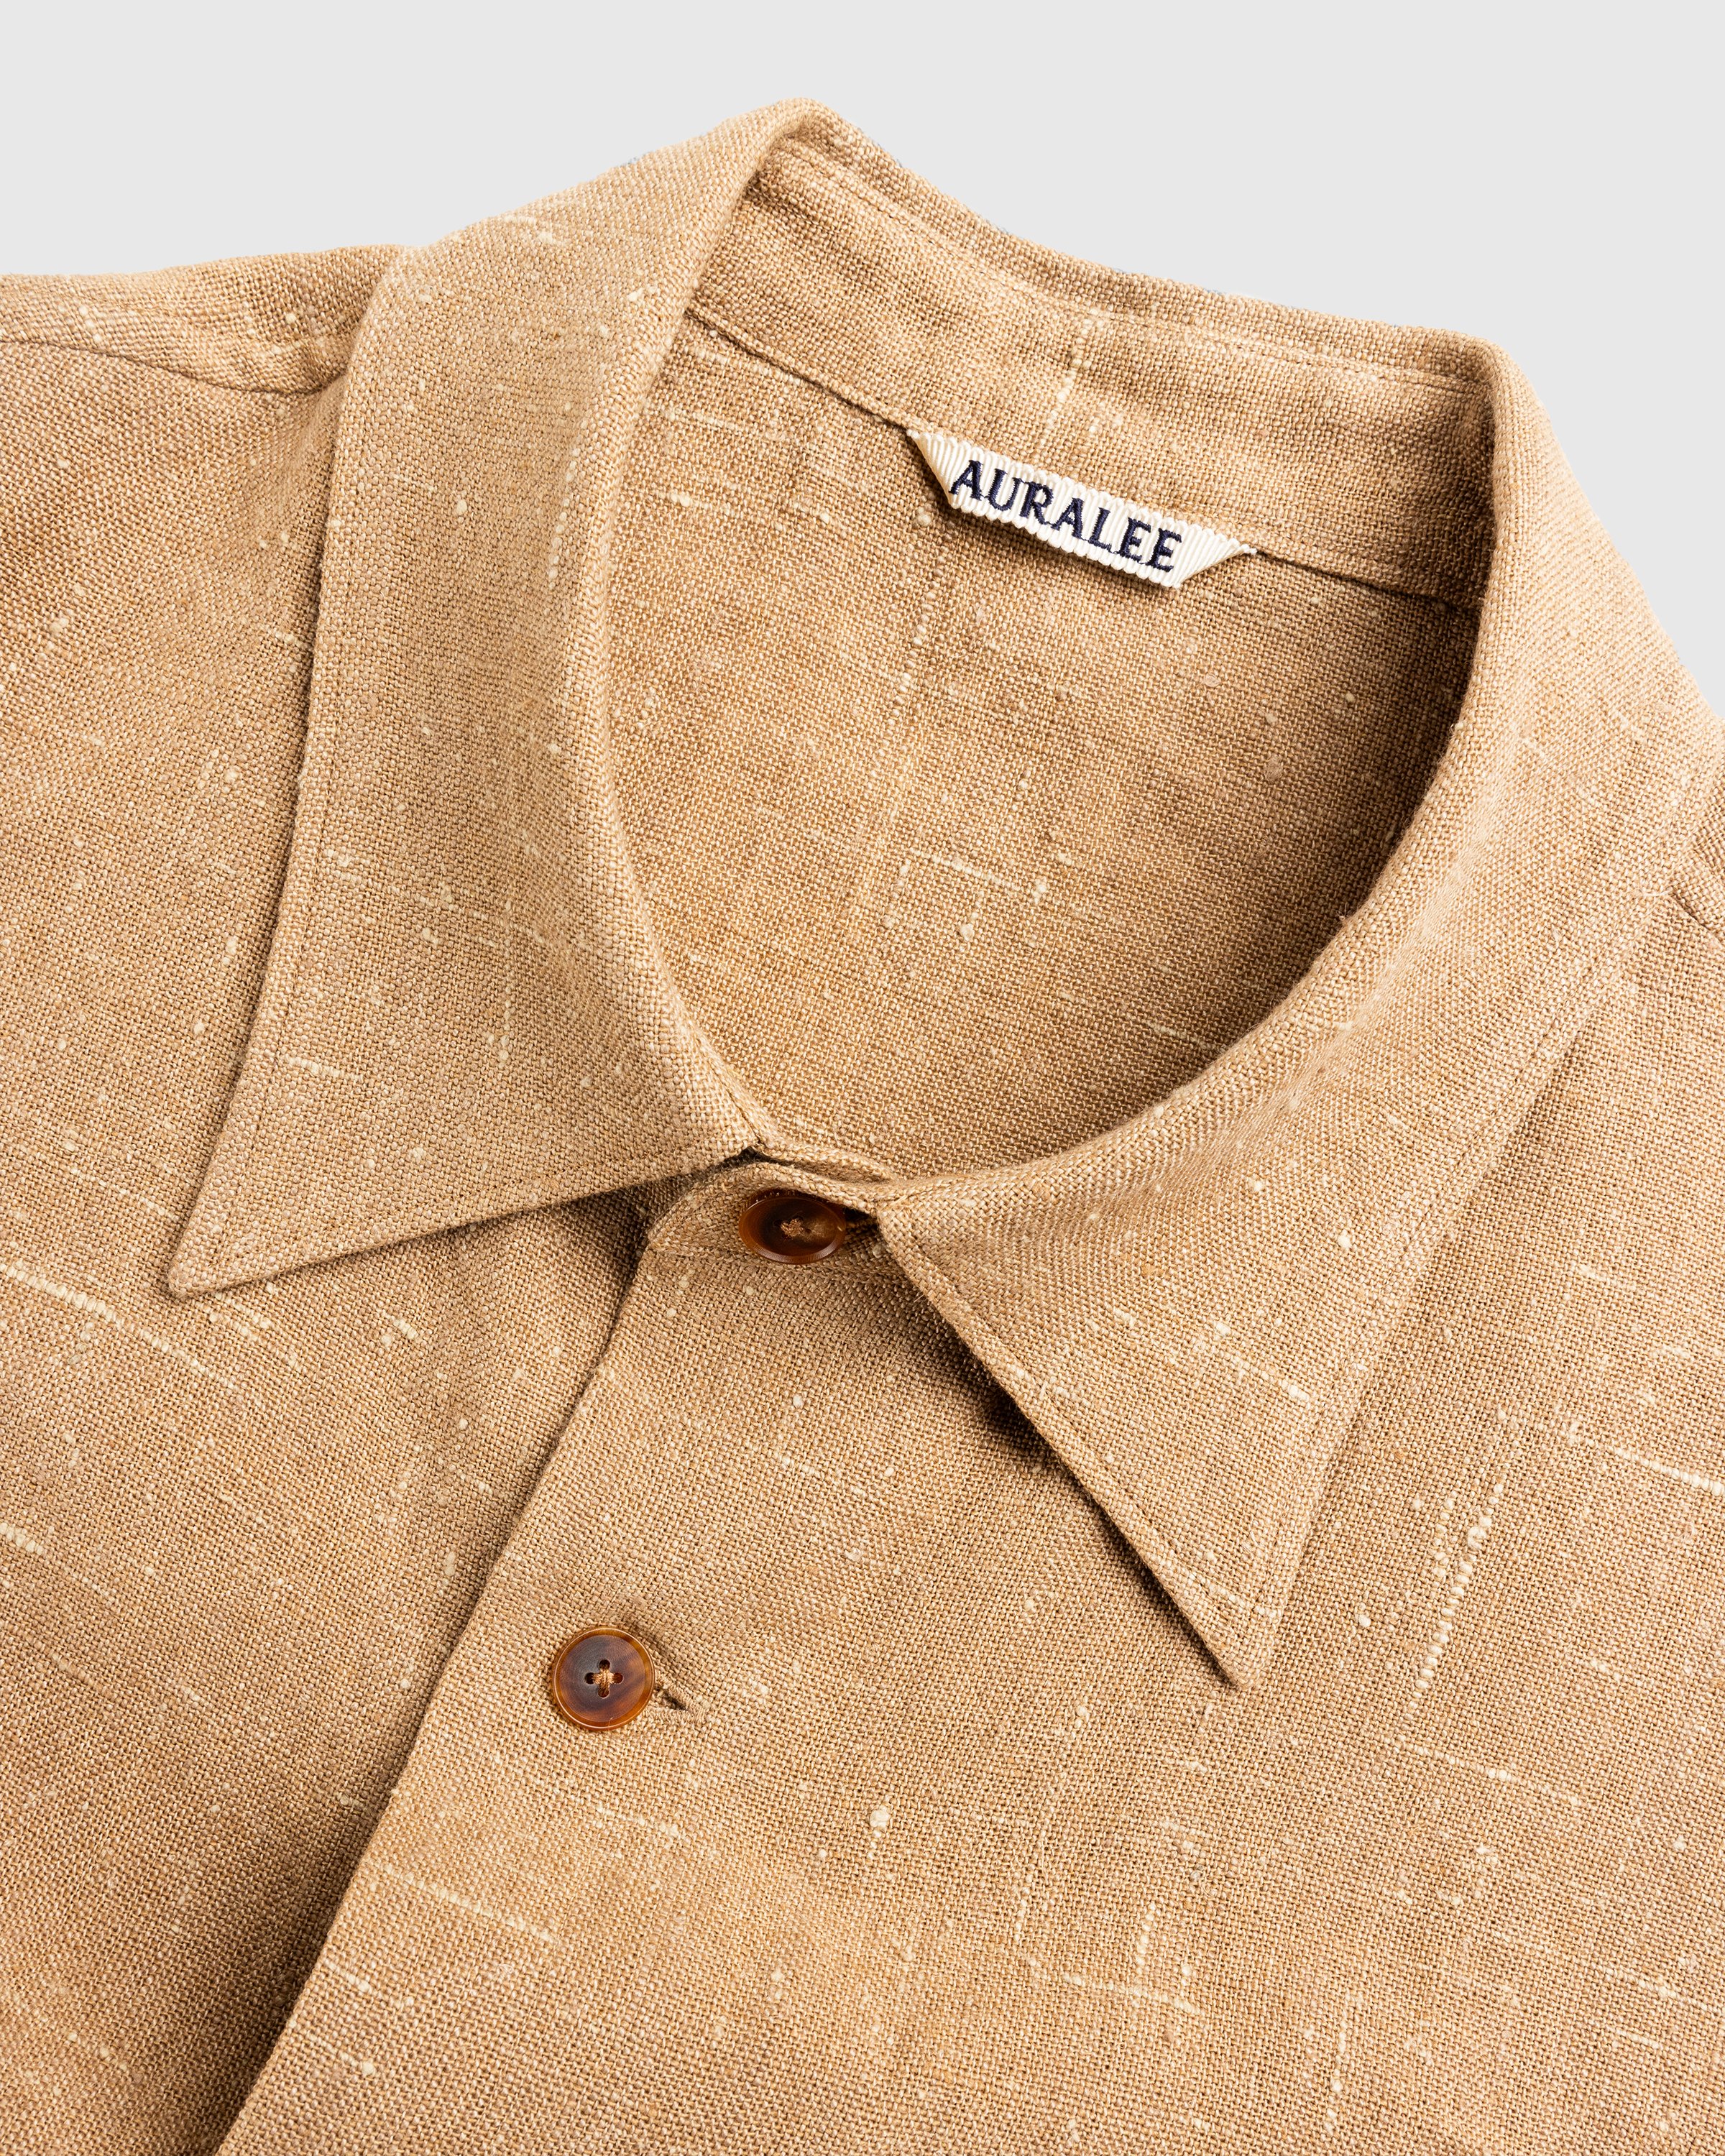 Auralee - Linen Silk Tweed Half Sleeved Shirt Brown - Clothing - Brown - Image 6